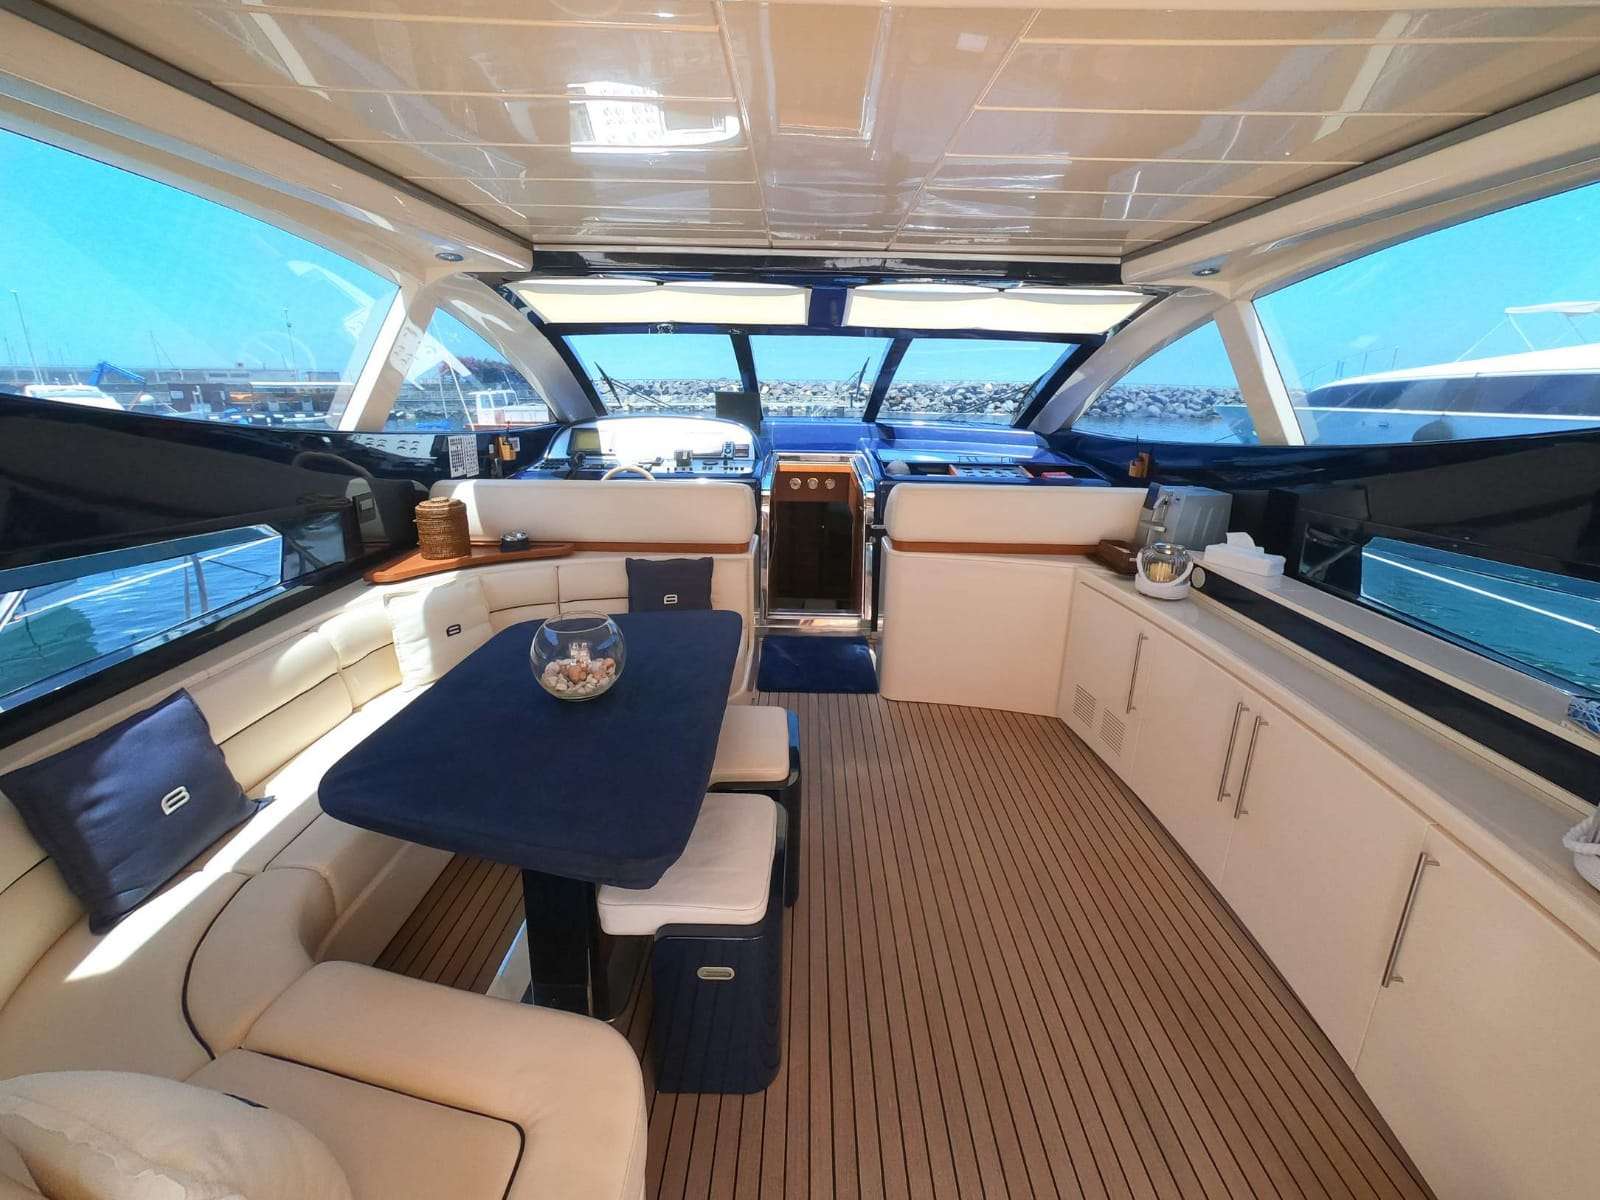 BABLUC Yacht Charter - Cockpit Area